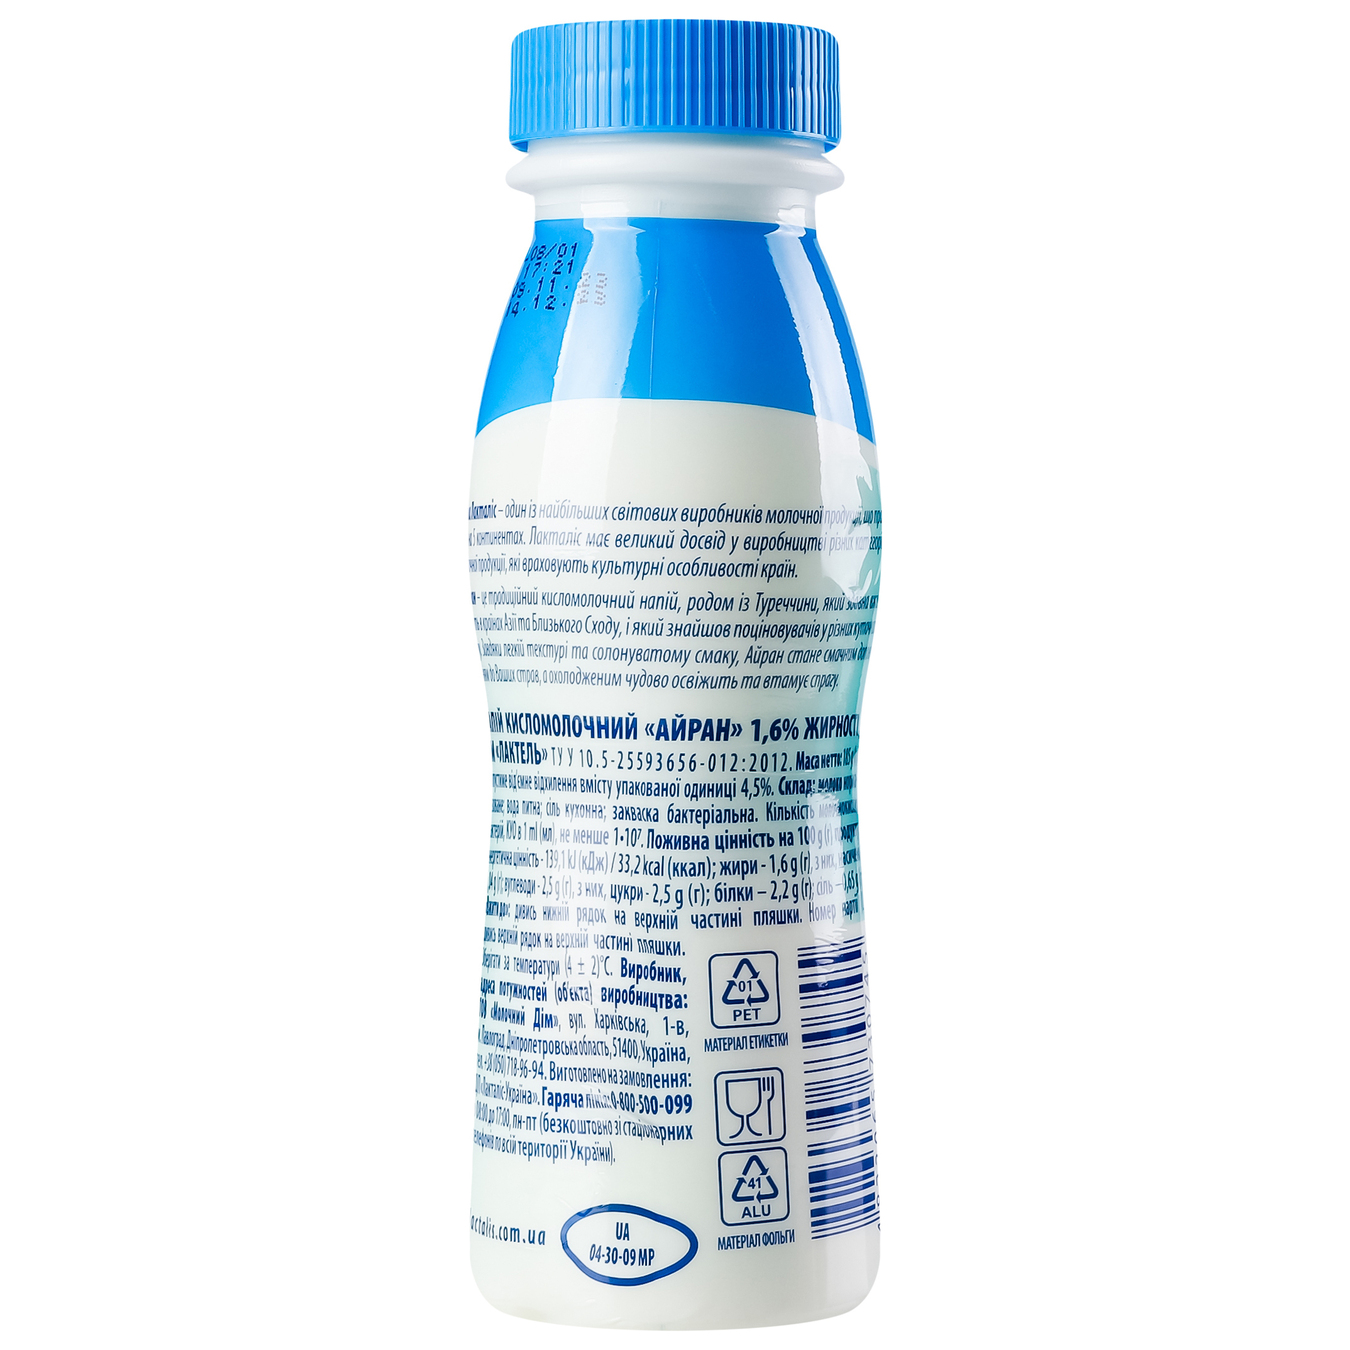 Напиток кисломолочный Лактель Айран питьевая бутылка 1,6% 185г 5